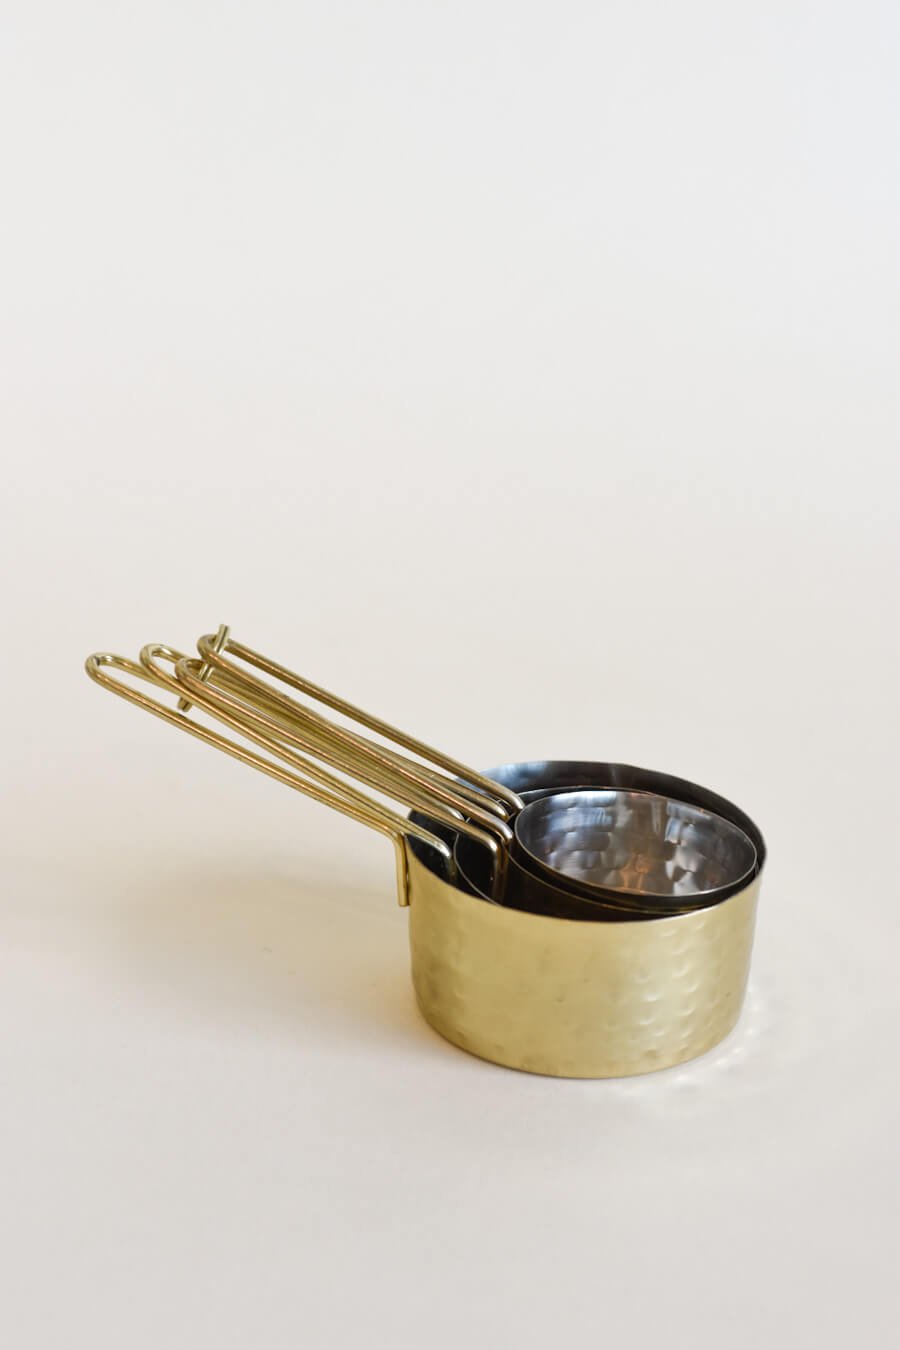 Tasses à mesurer Or - Maison Olive - Ustensiles et accessoires de cuisine